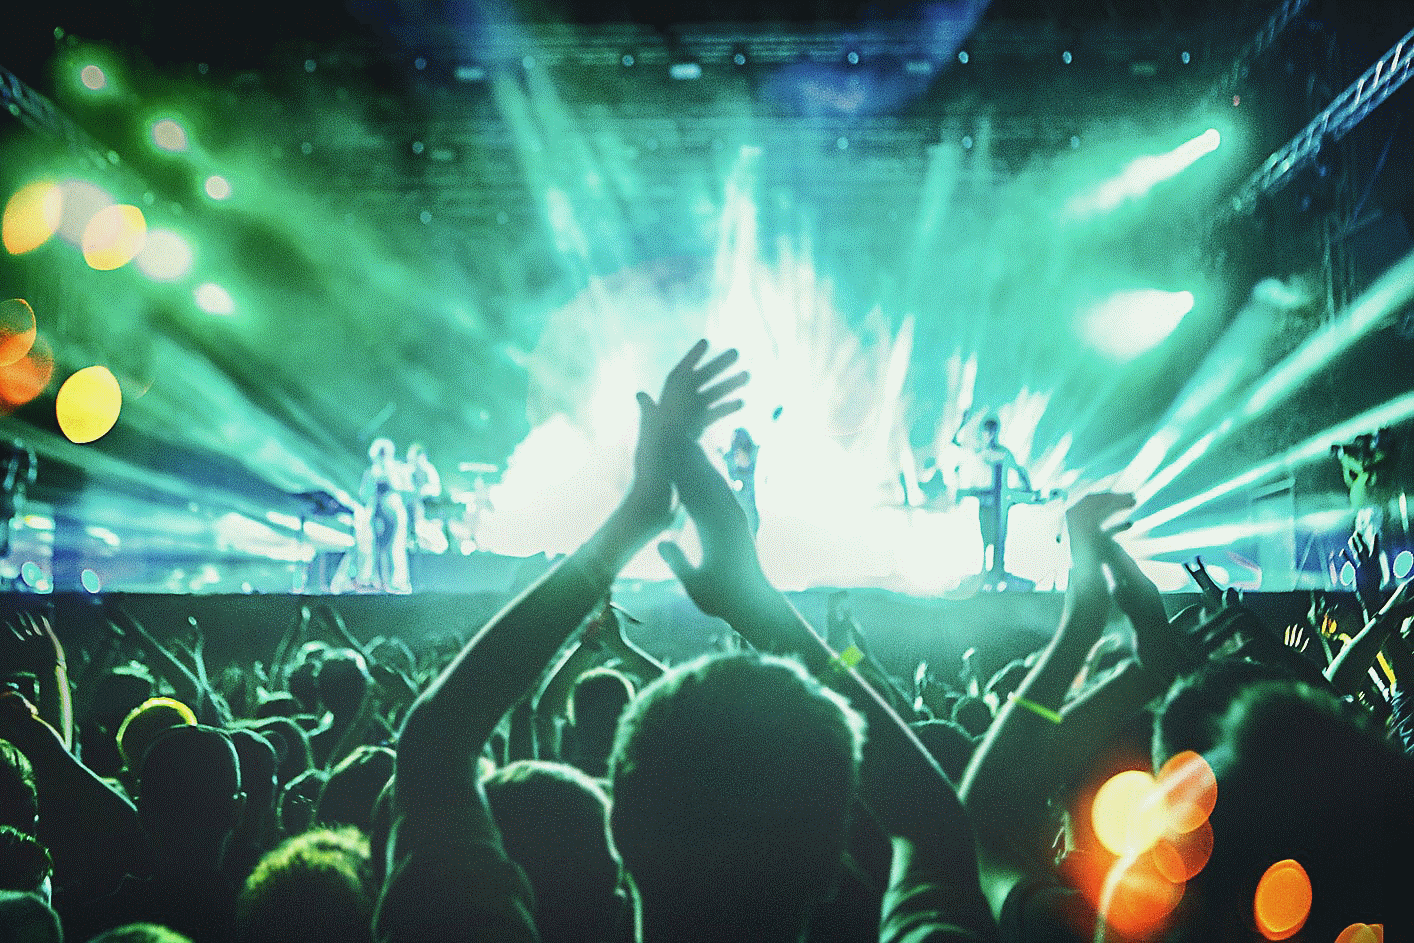 Zdjęcie z koncertu na żywo z wieloma klaszczącymi osobami i niebiesko-zielonym oświetleniem